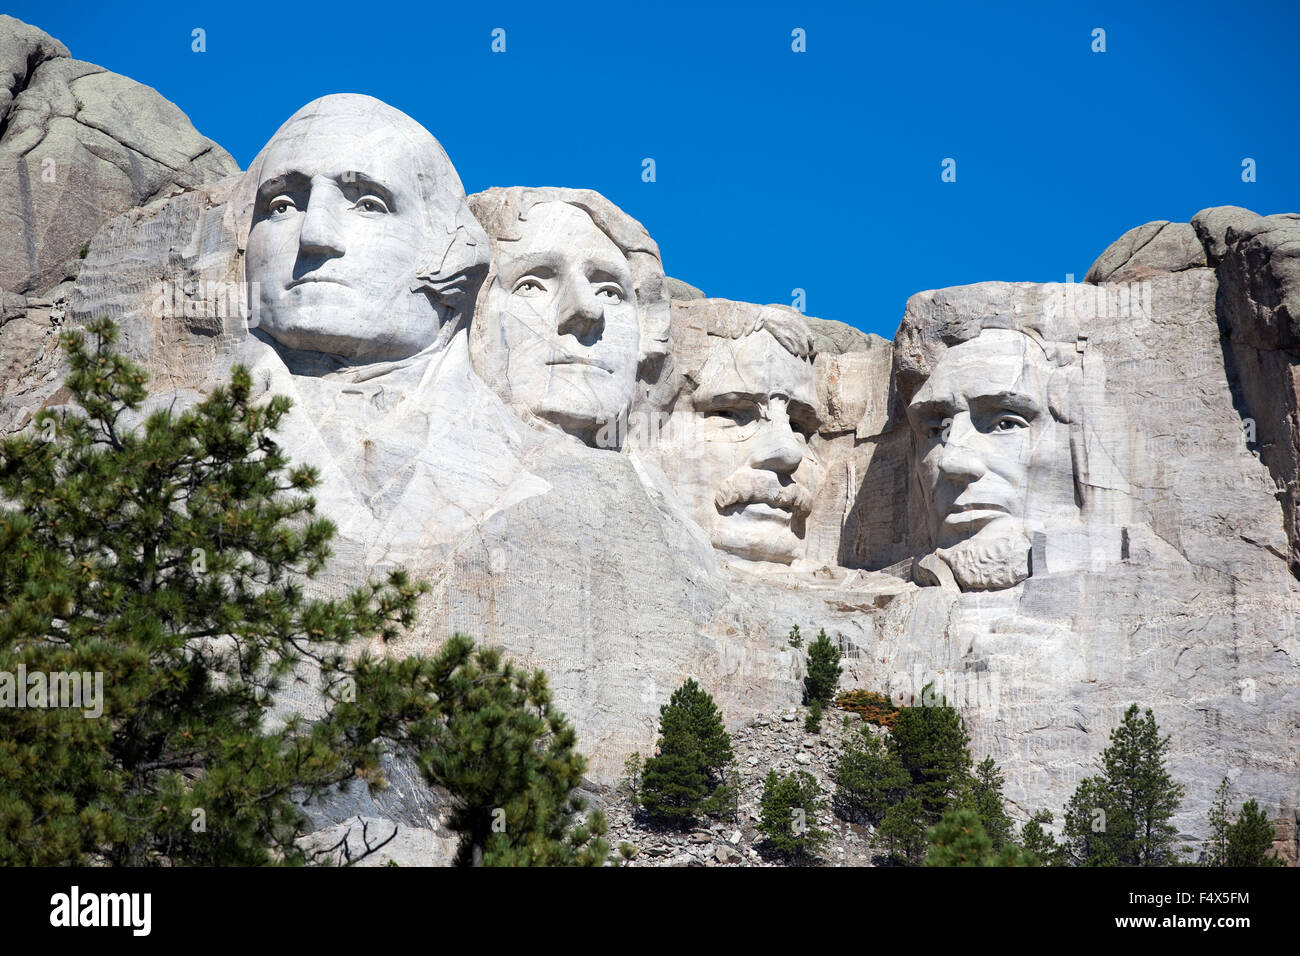 Mt. Rushmore National Memorial est situé dans le sud-ouest du Dakota du Sud, USA. Banque D'Images